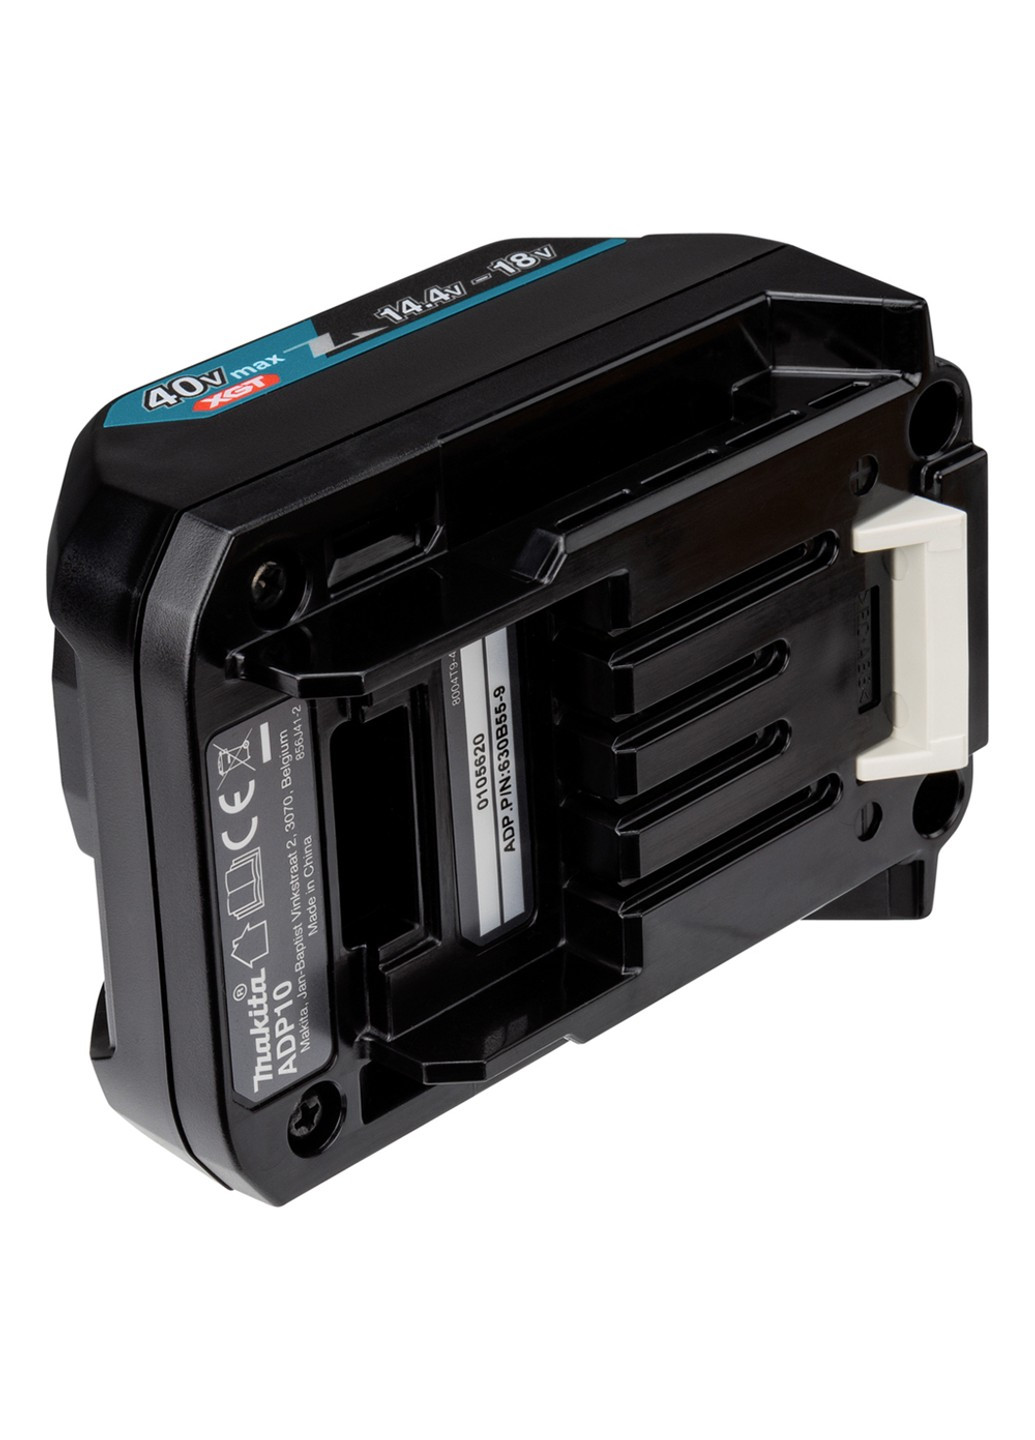 Адаптер ADP10 для зарядки аккумуляторов LXT зарядным устройством XGT 191C10-7 Makita (257973446)